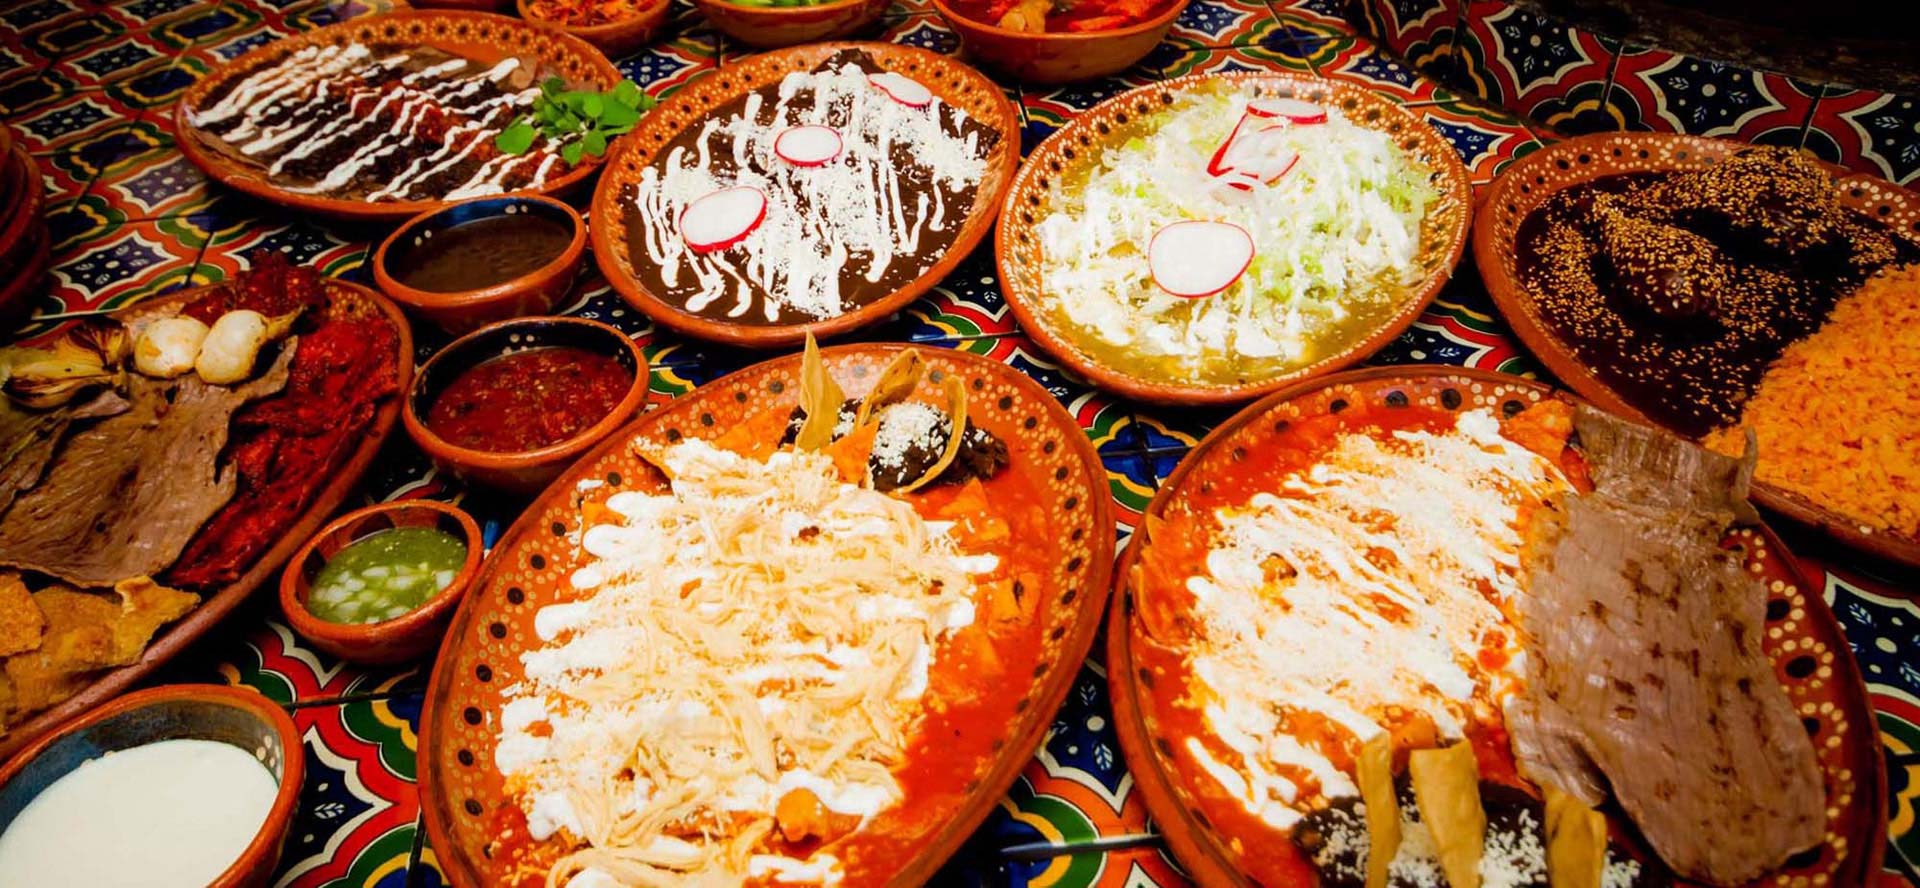 Te dejamos 8 lugares para comer bueno, bonito y barato en Morelos